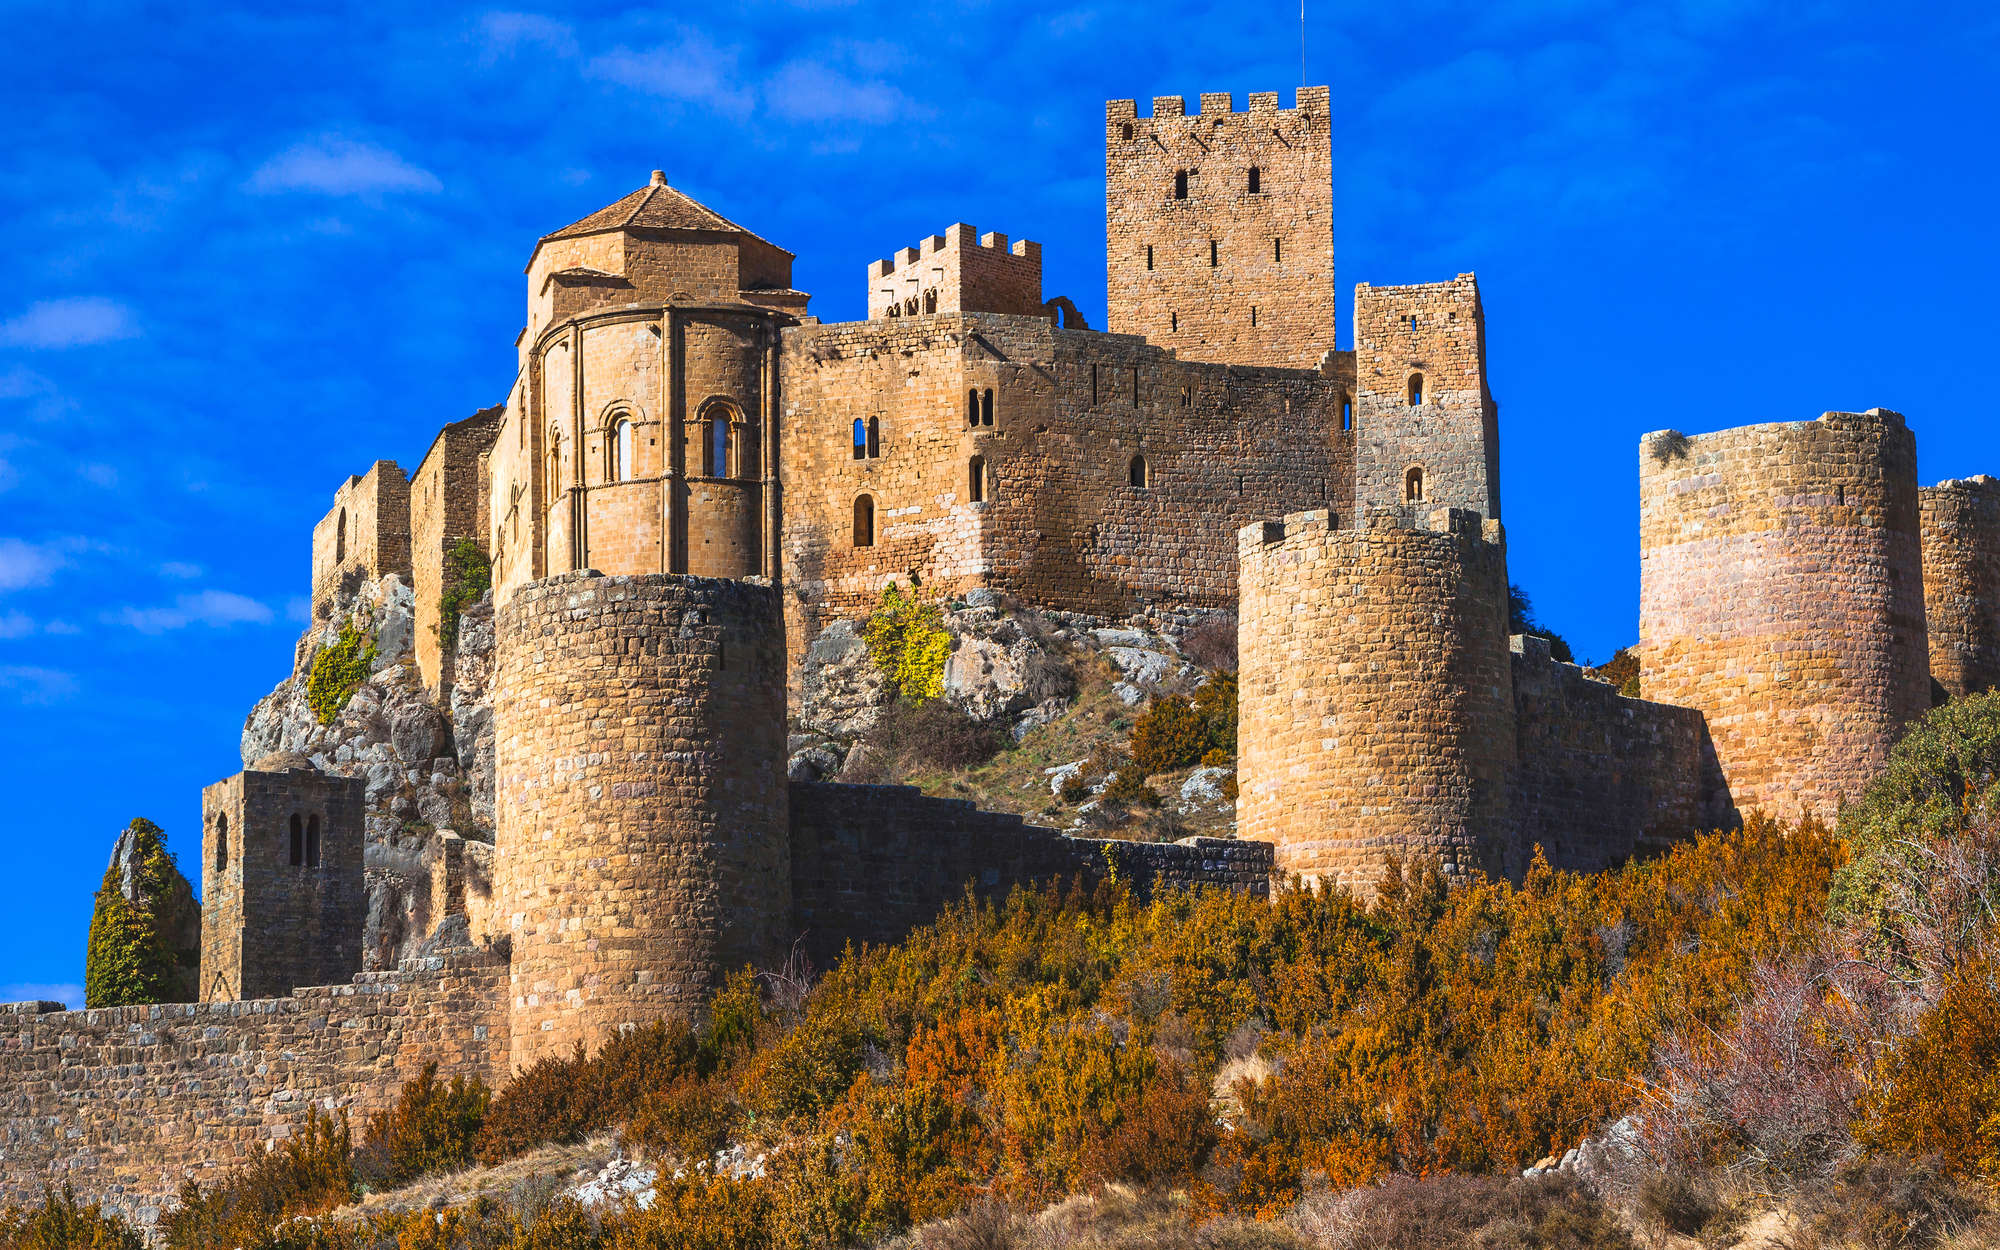             Fototapete Antike Burg mit Steinmauer – Perlmutt Glattvlies
        